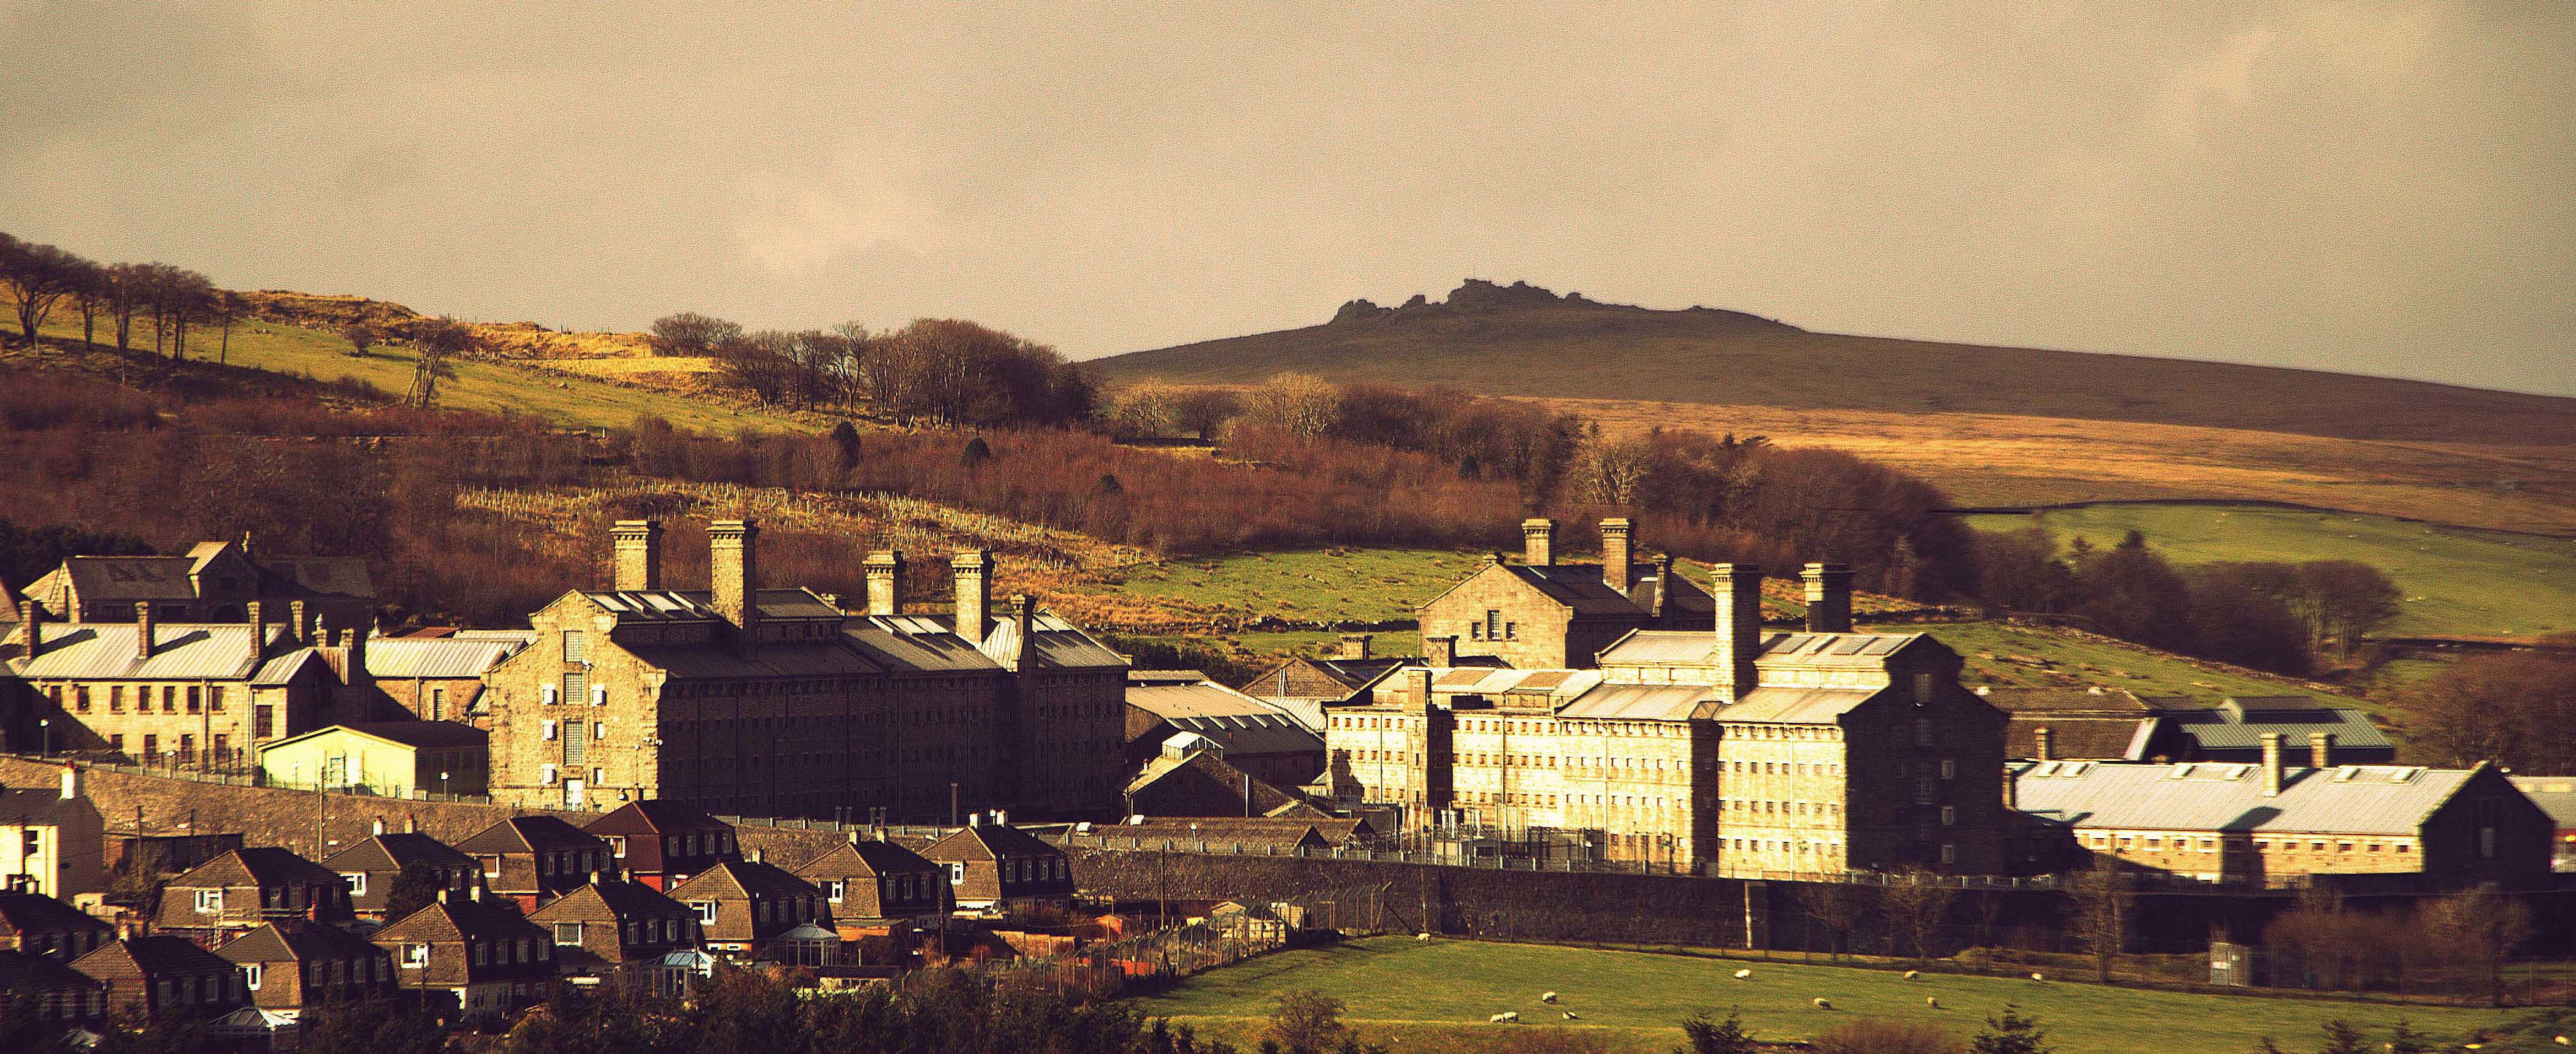 book prison visit dartmoor